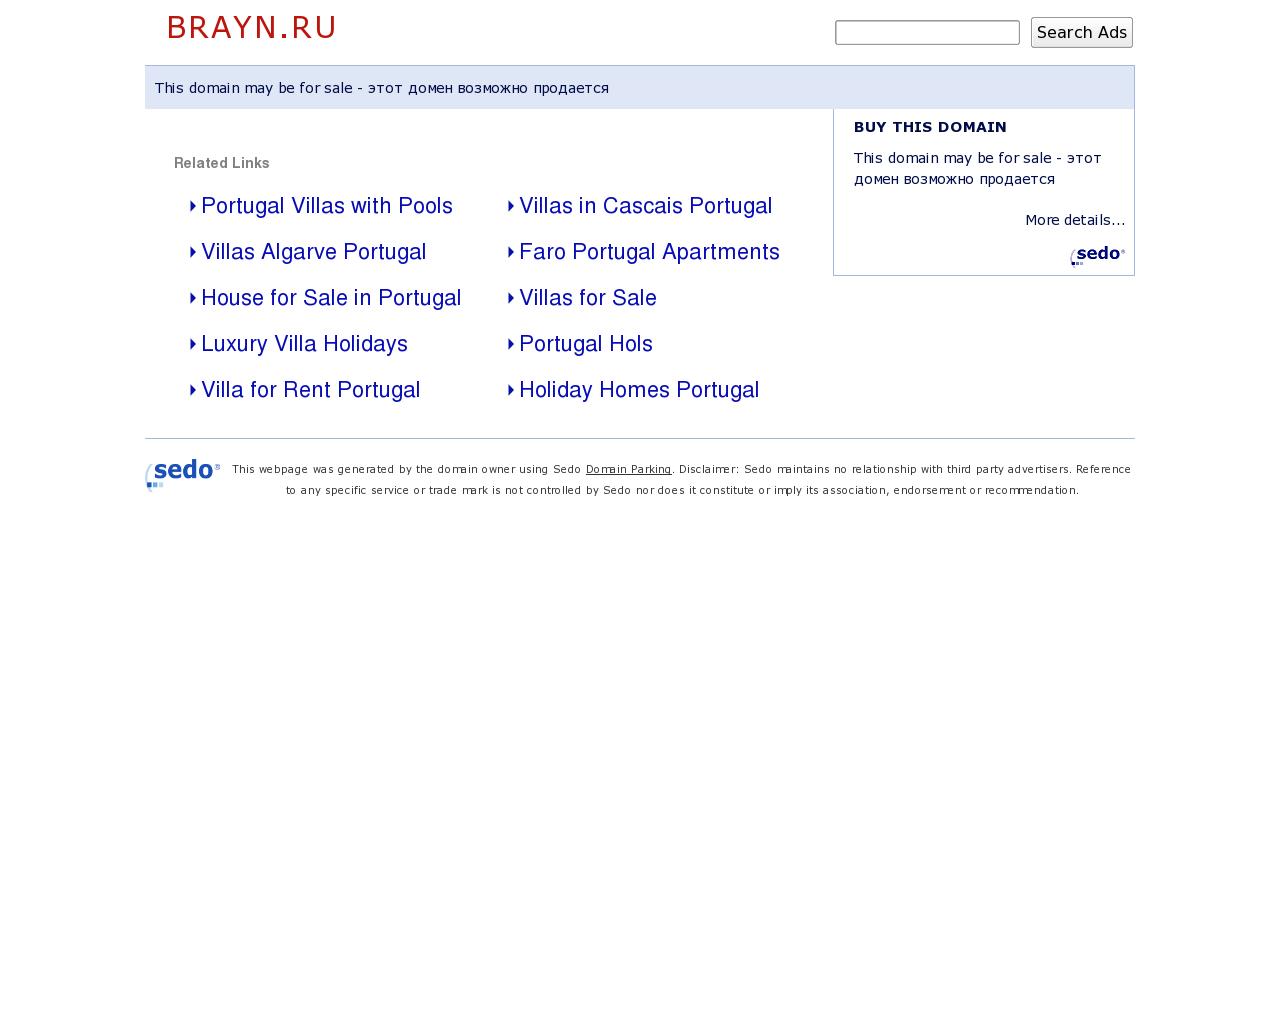 Изображение сайта brayn.ru в разрешении 1280x1024